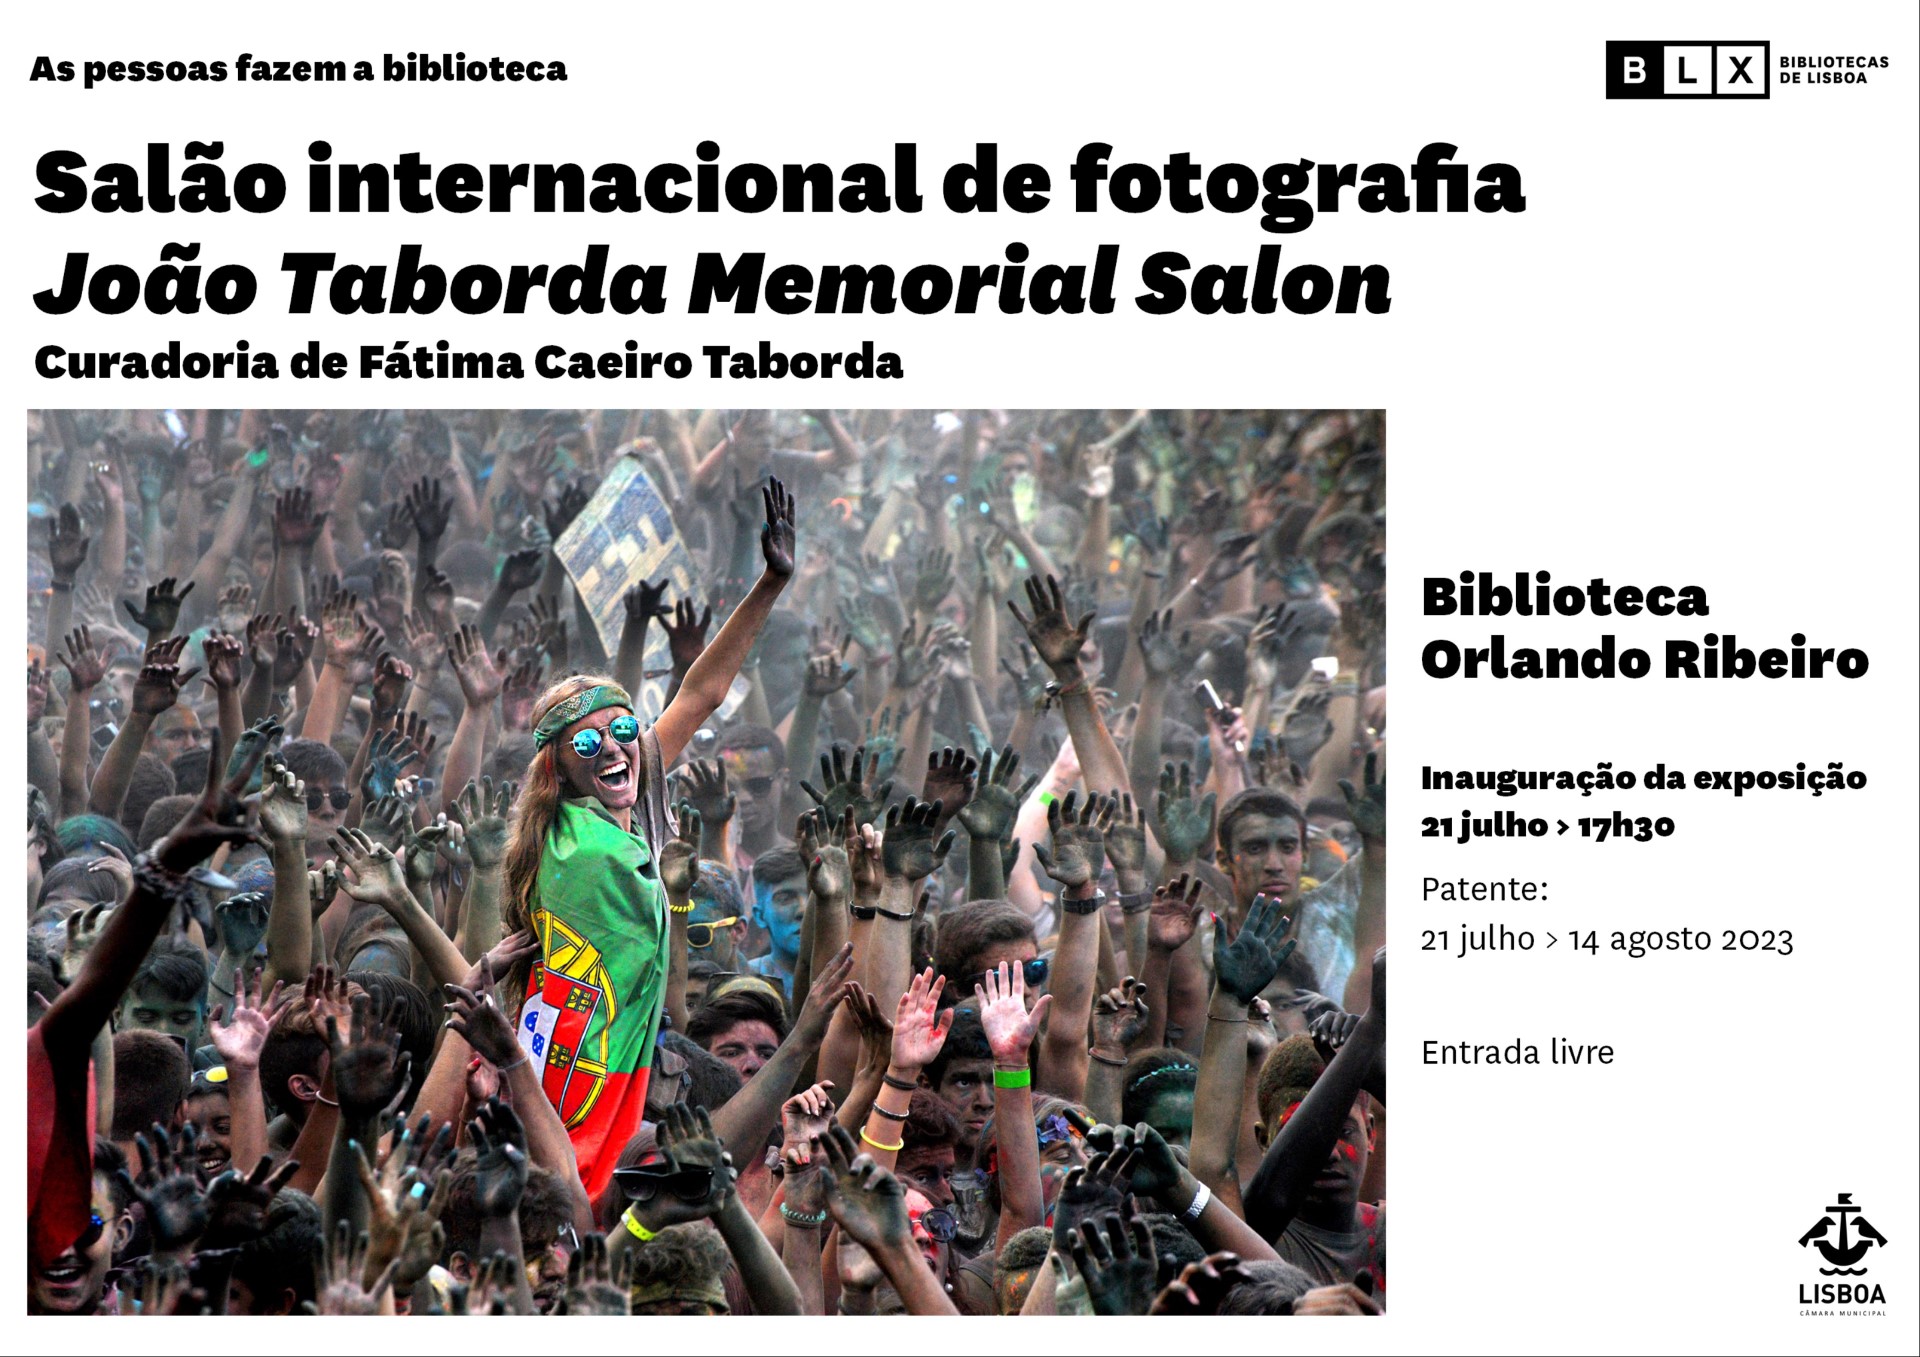 Exposição de fotografia de homenagem ao fotógrafo João Taborda, por Fátima Caeiro Taborda.